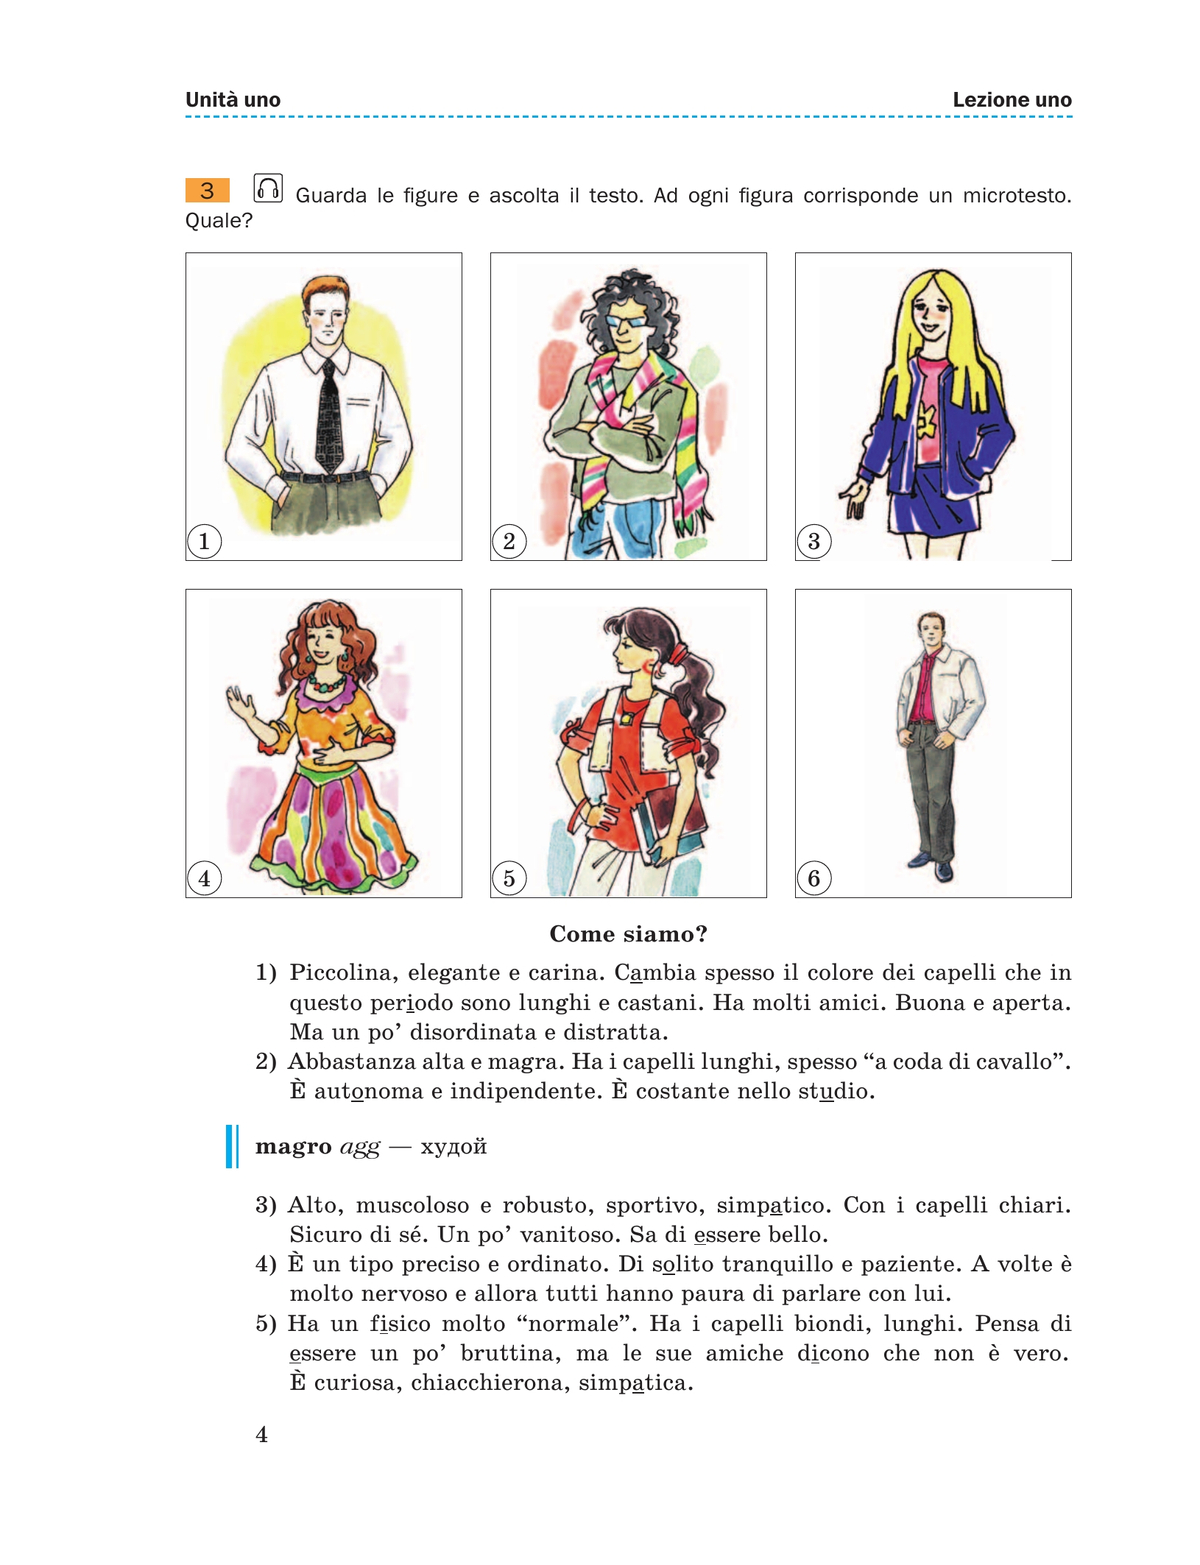 Итальянский язык. 9 класс. Учебник 8